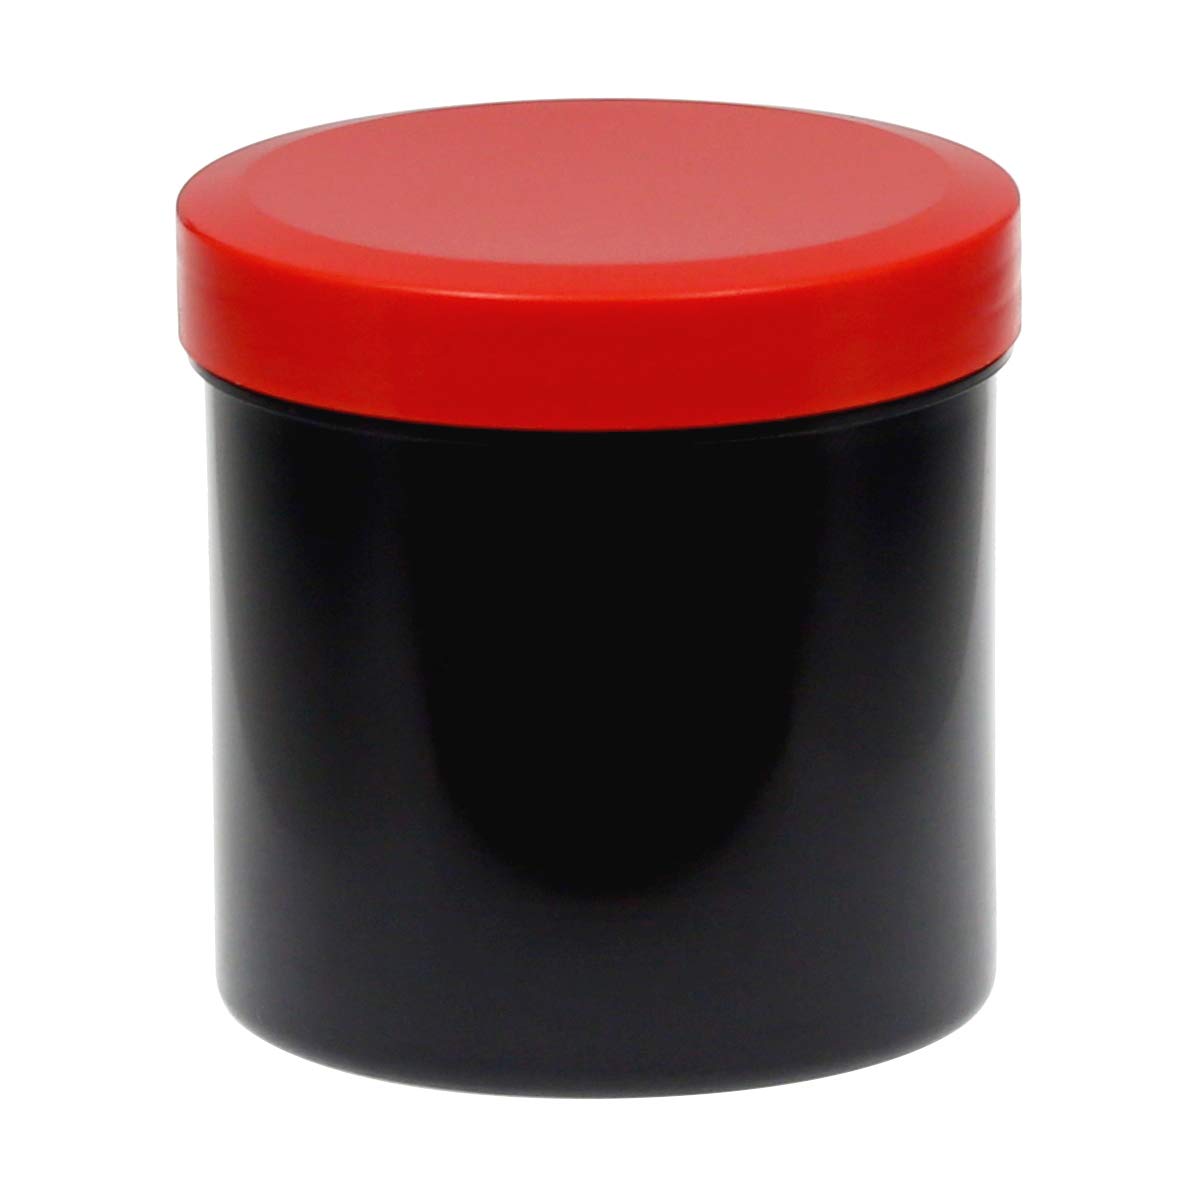 125ml Probendosen Schraubdeckeldosen Schraubdosen Cremedosen, Anzahl:50 Stück, Farbe:DoDe schwarz/rot